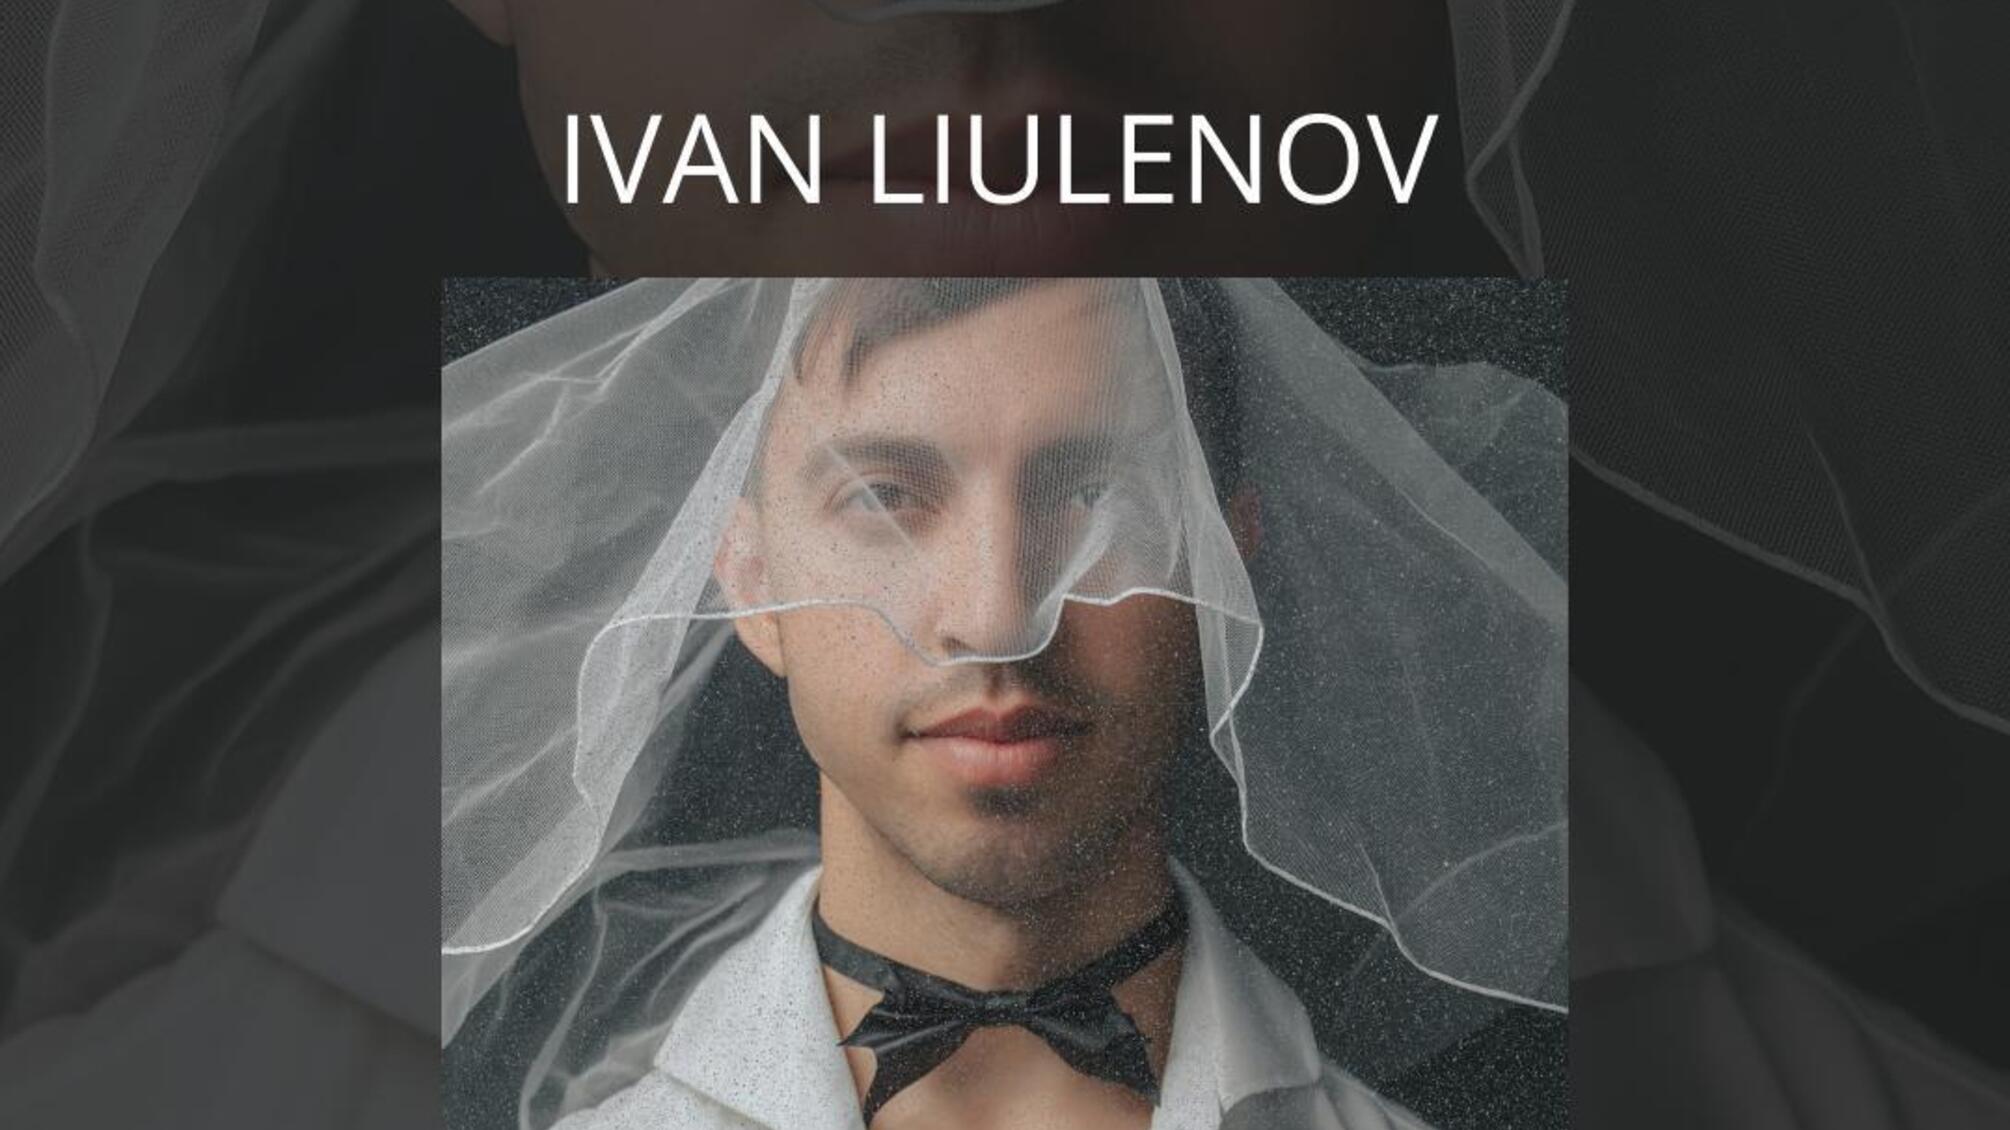 Сингл о забавных испытаниях в отношениях: IVAN LIULENOV представил трек 'ЕщенеНевеста'